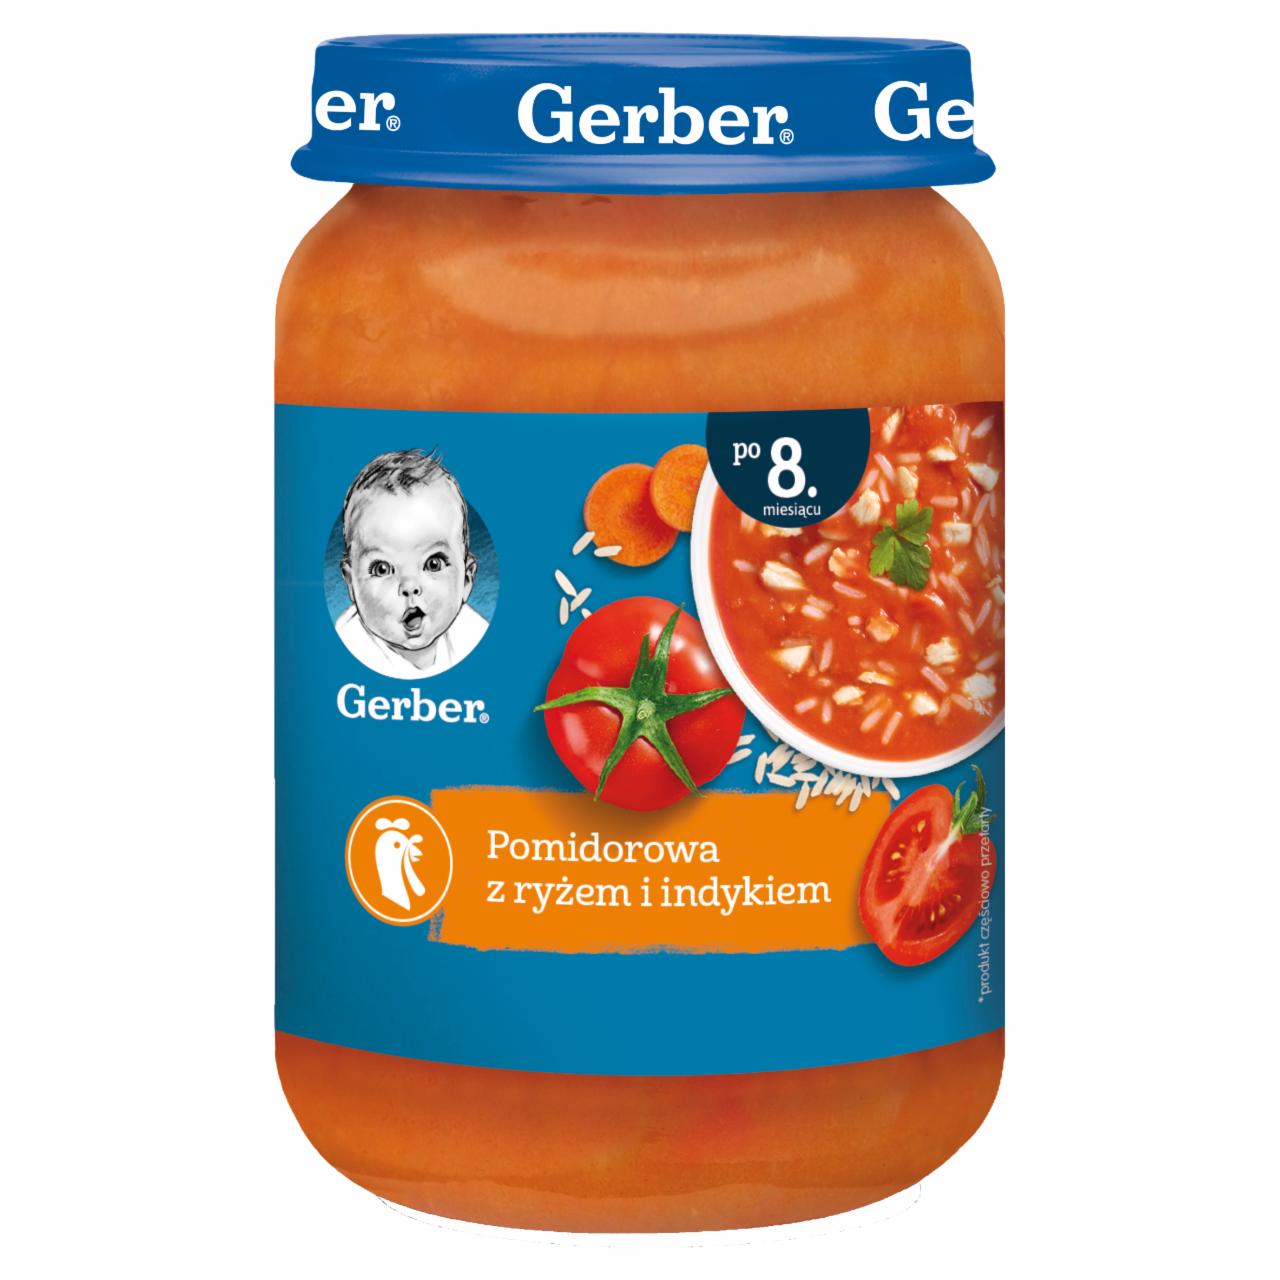 Zdjęcia - Gerber Pomidorowa z ryżem i indykiem dla niemowląt po 8. miesiącu 190 g